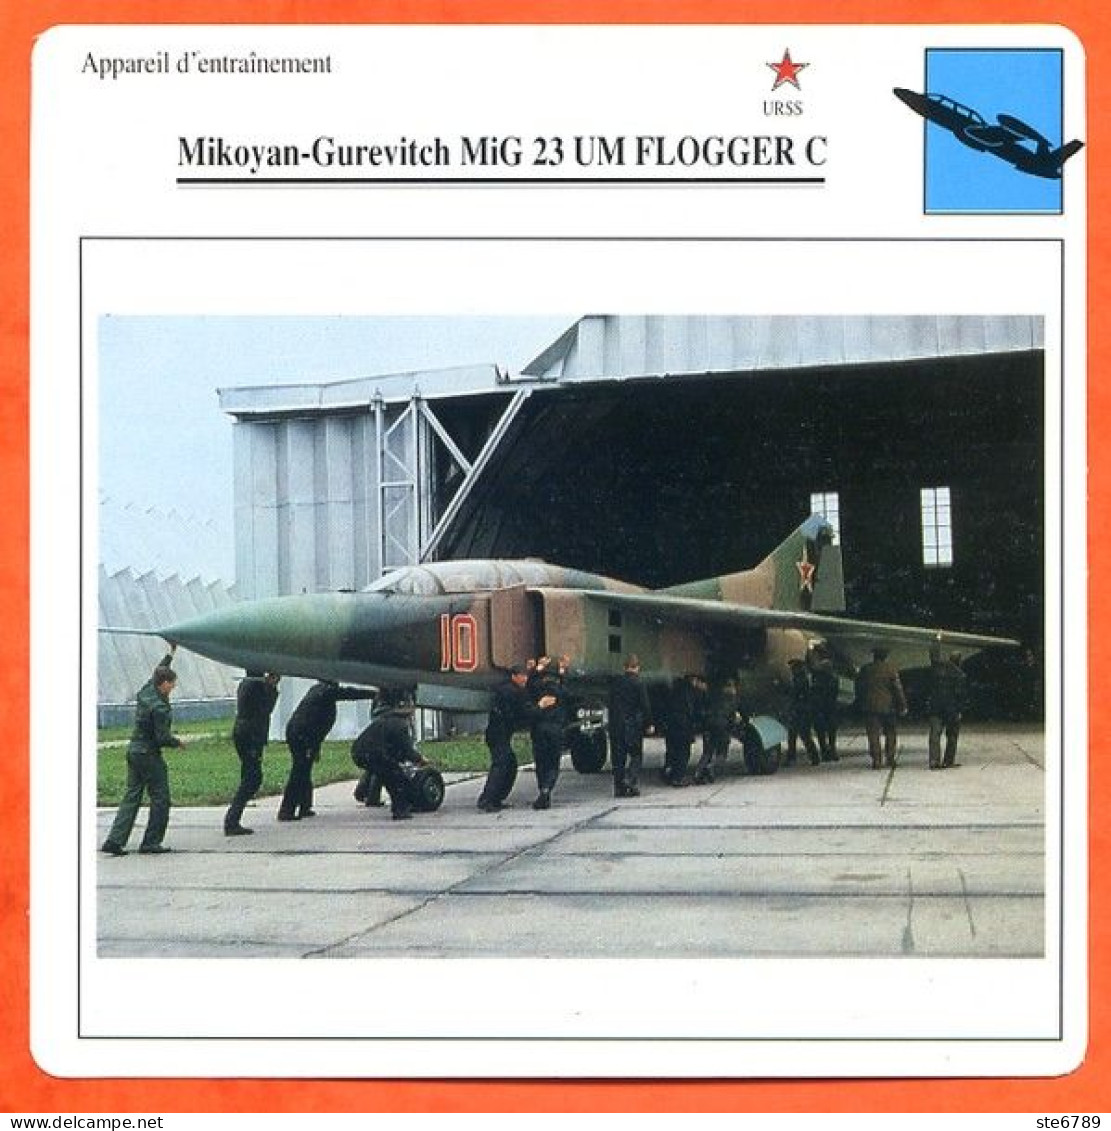 Fiche Aviation Mikoyan Gurevitch MiG 23 UM FLOGGER C  / Avion Appareil D'entrainement URSS Avions - Avions